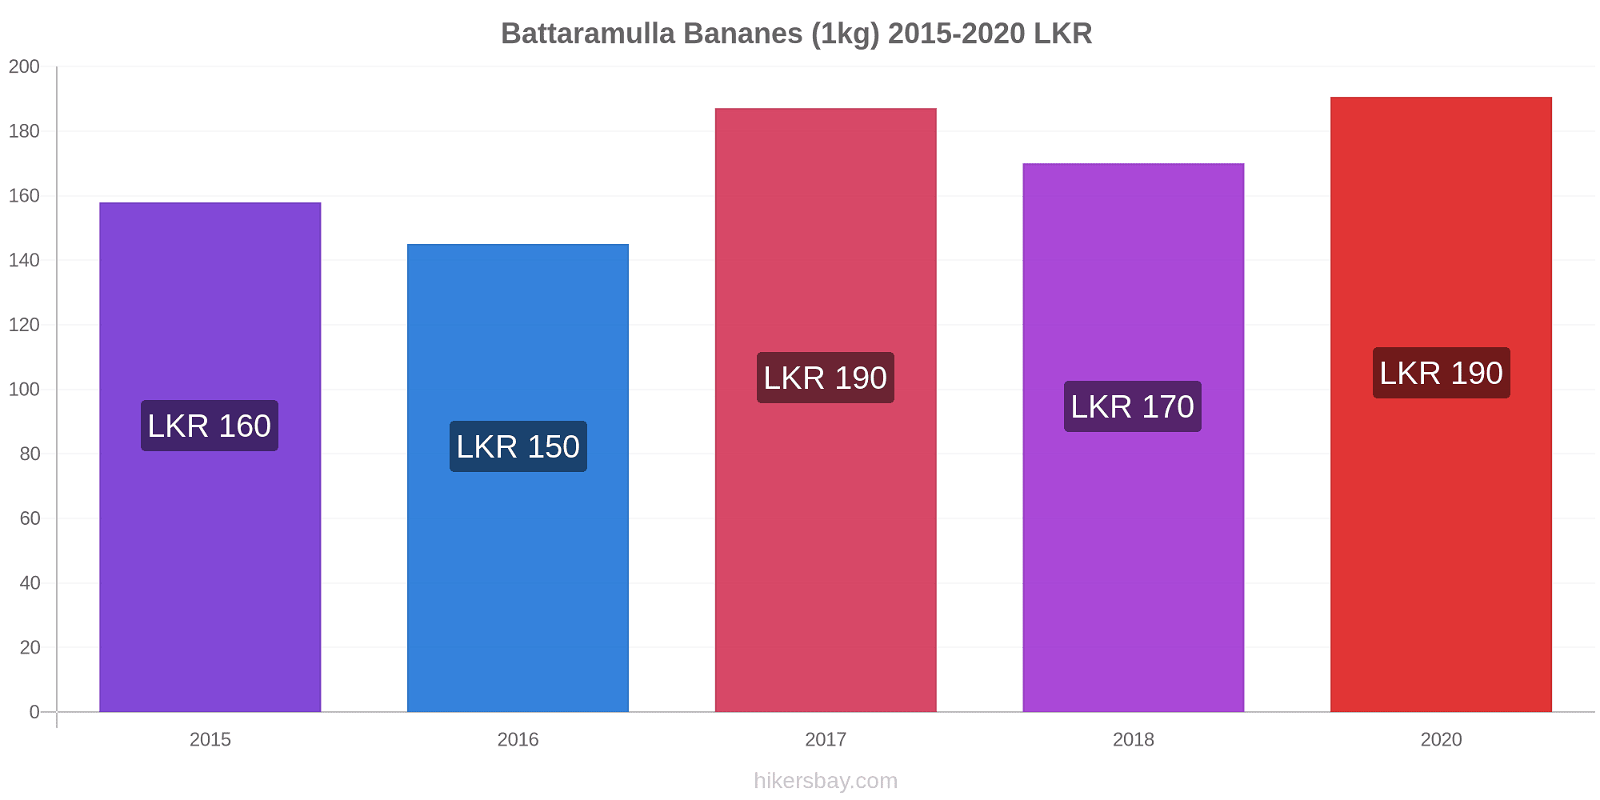 Battaramulla changements de prix Bananes (1kg) hikersbay.com